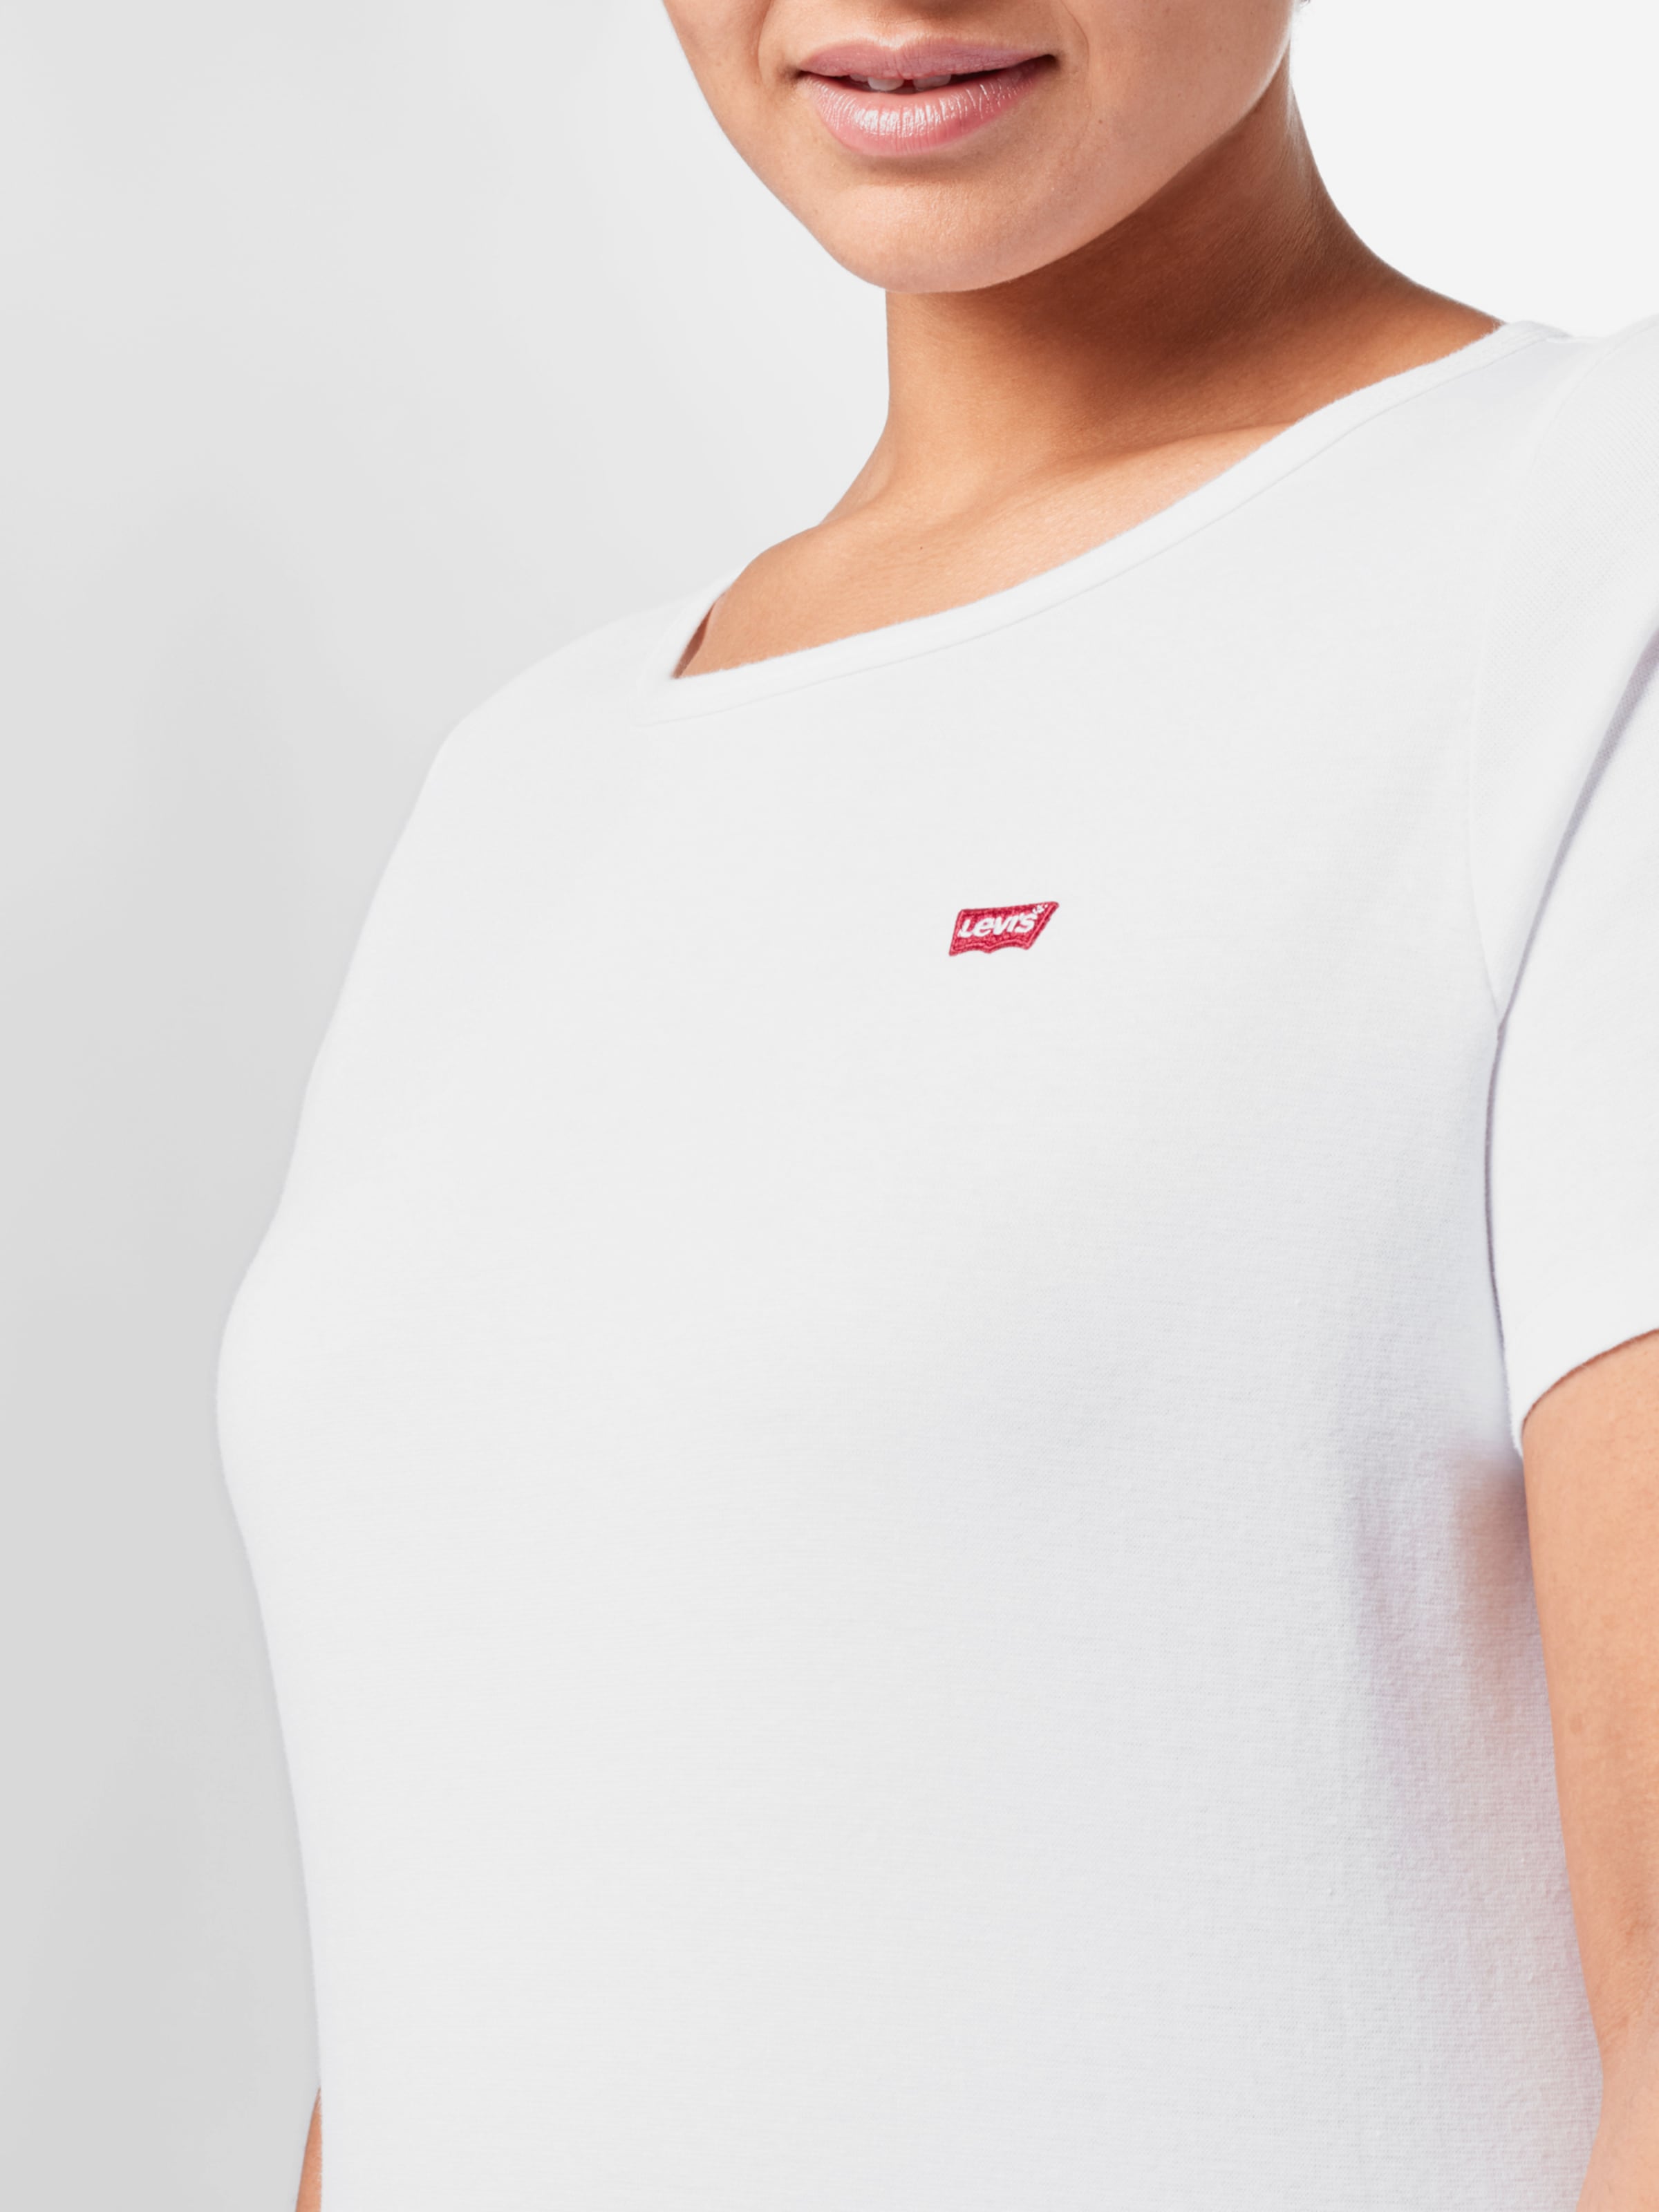 Frauen Shirts & Tops Levi's® Plus T-Shirt in Schwarz, Weiß - UG21612